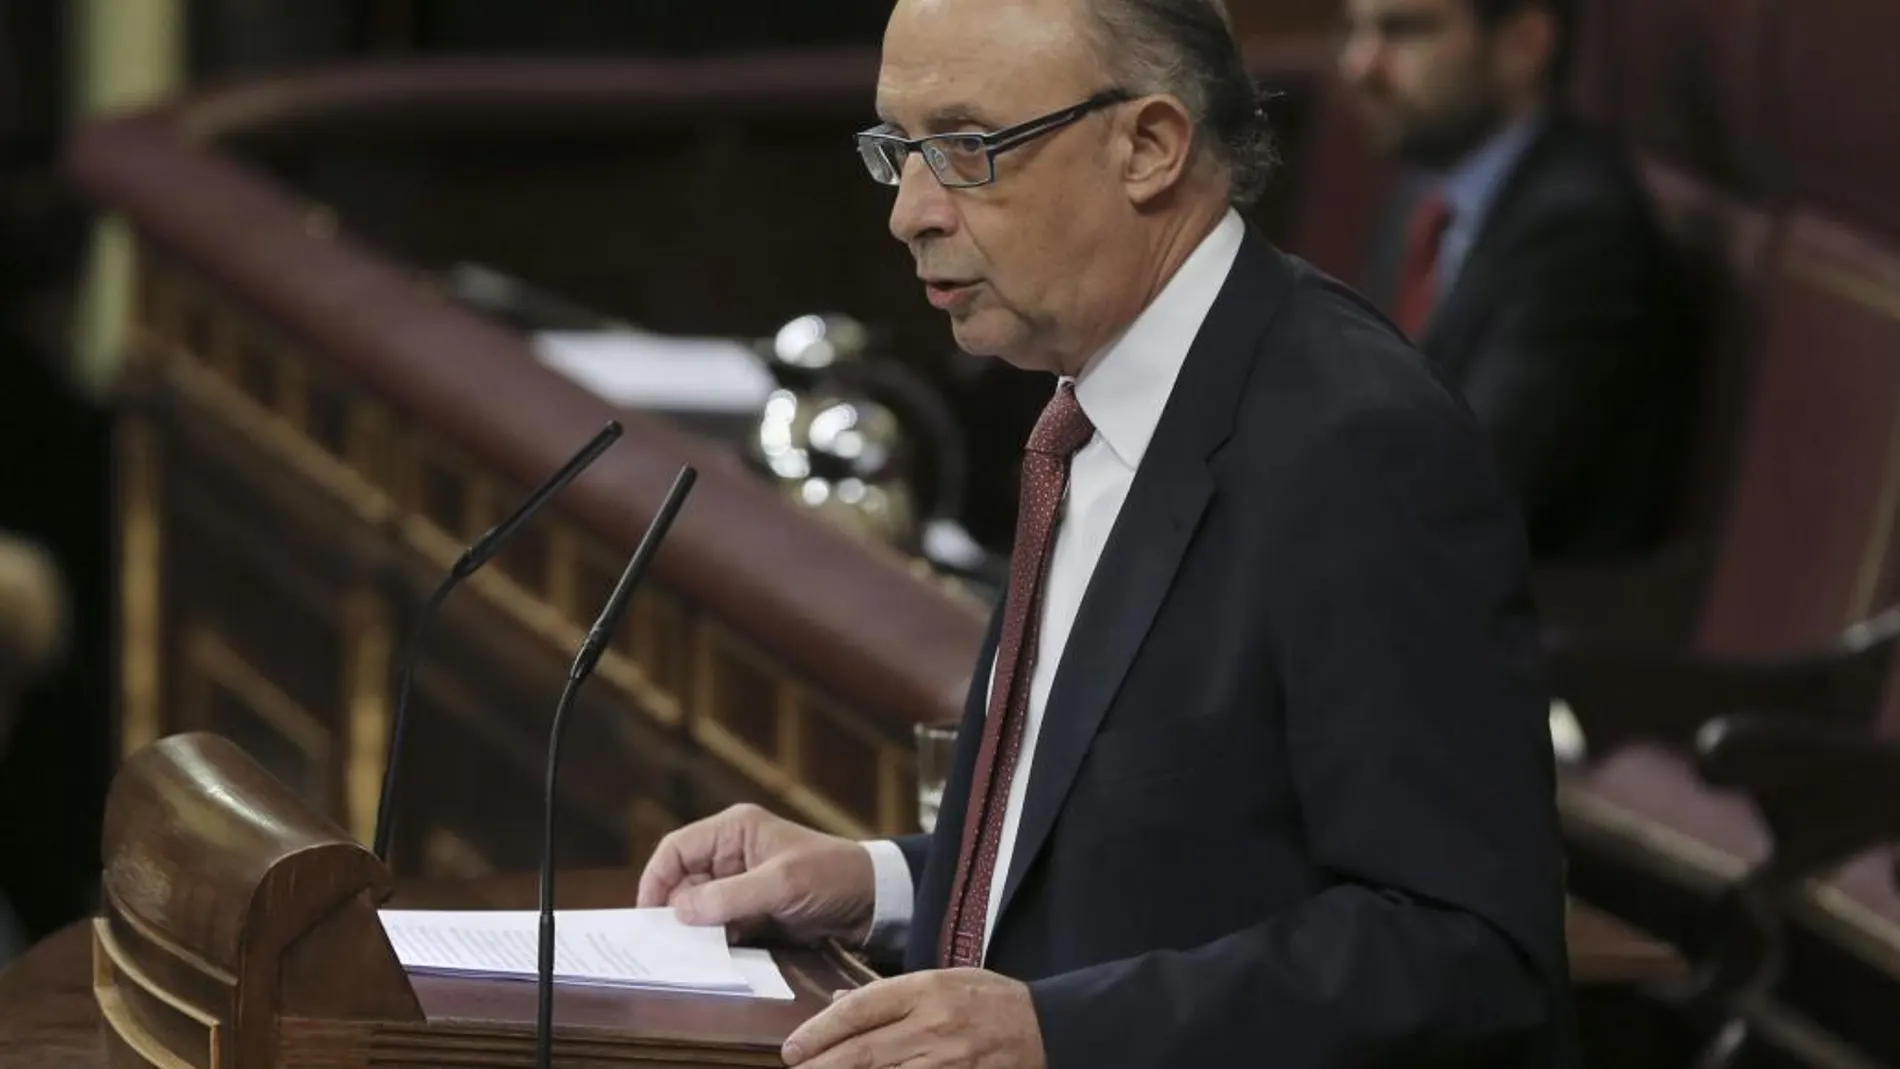 El ministro de Hacienda, Cristóbal Montoro, durante su intervención en el debate del Congreso sobre los objetivos de estabilidad presupuestaria para el periodo 2016-2018